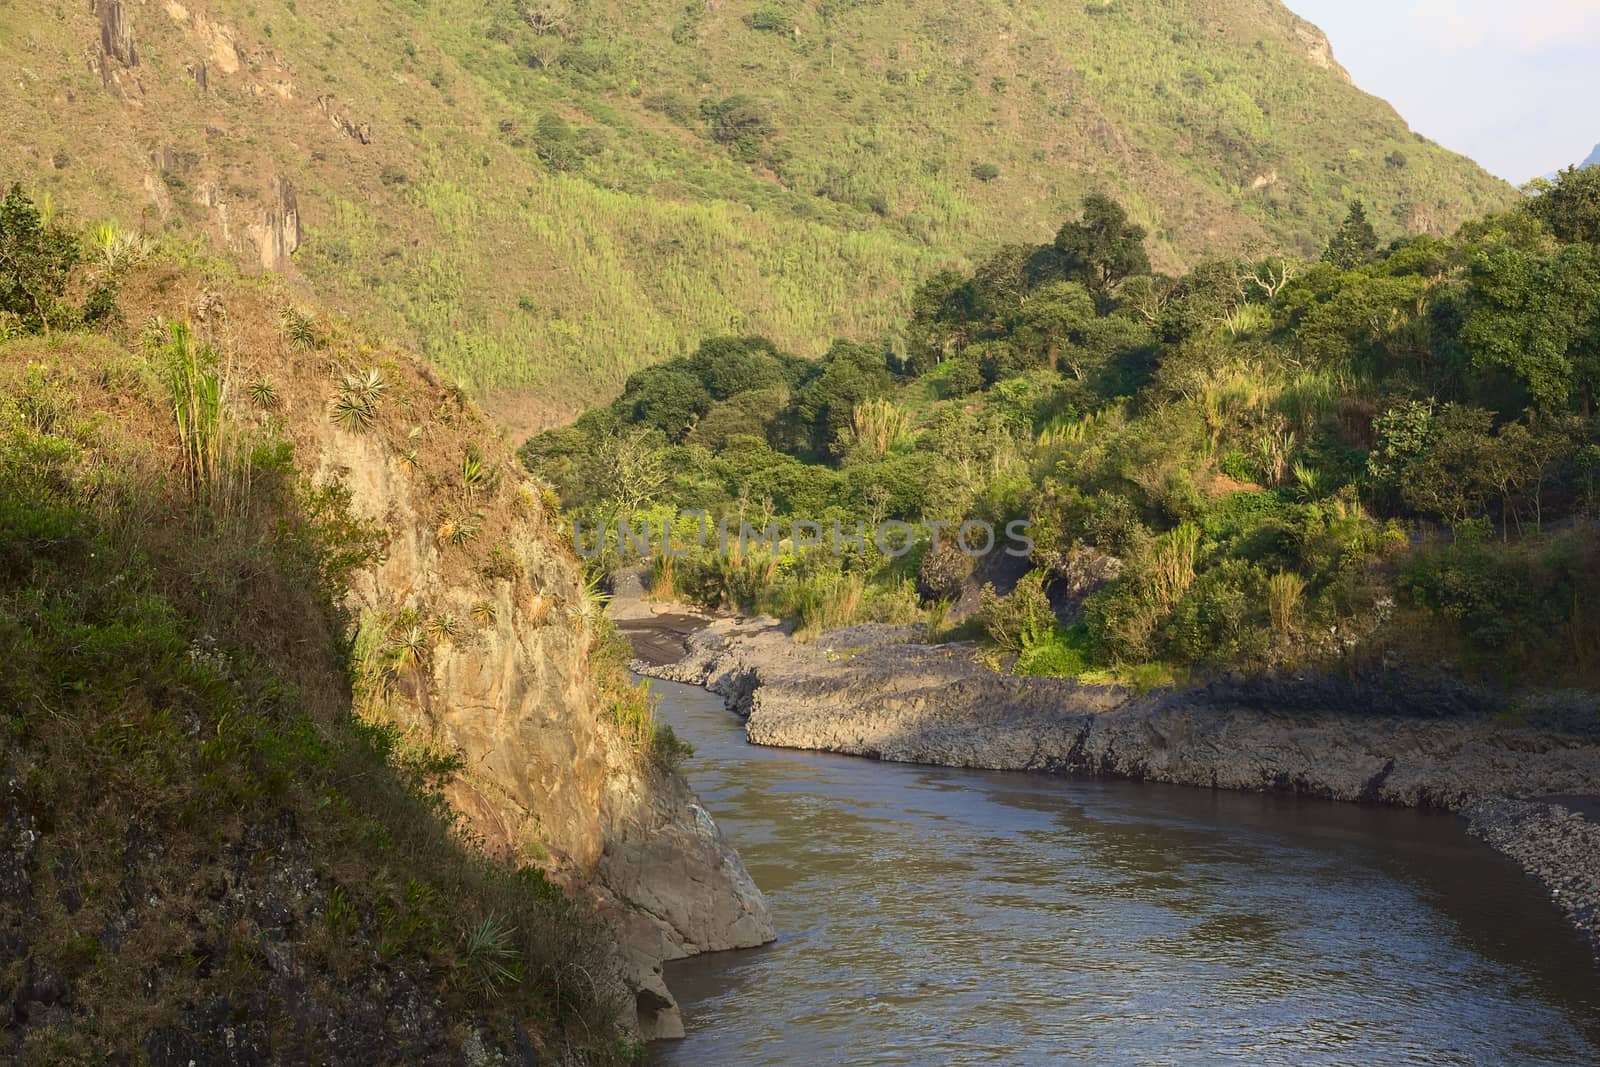 The Pastaza River in Ecuador by ildi